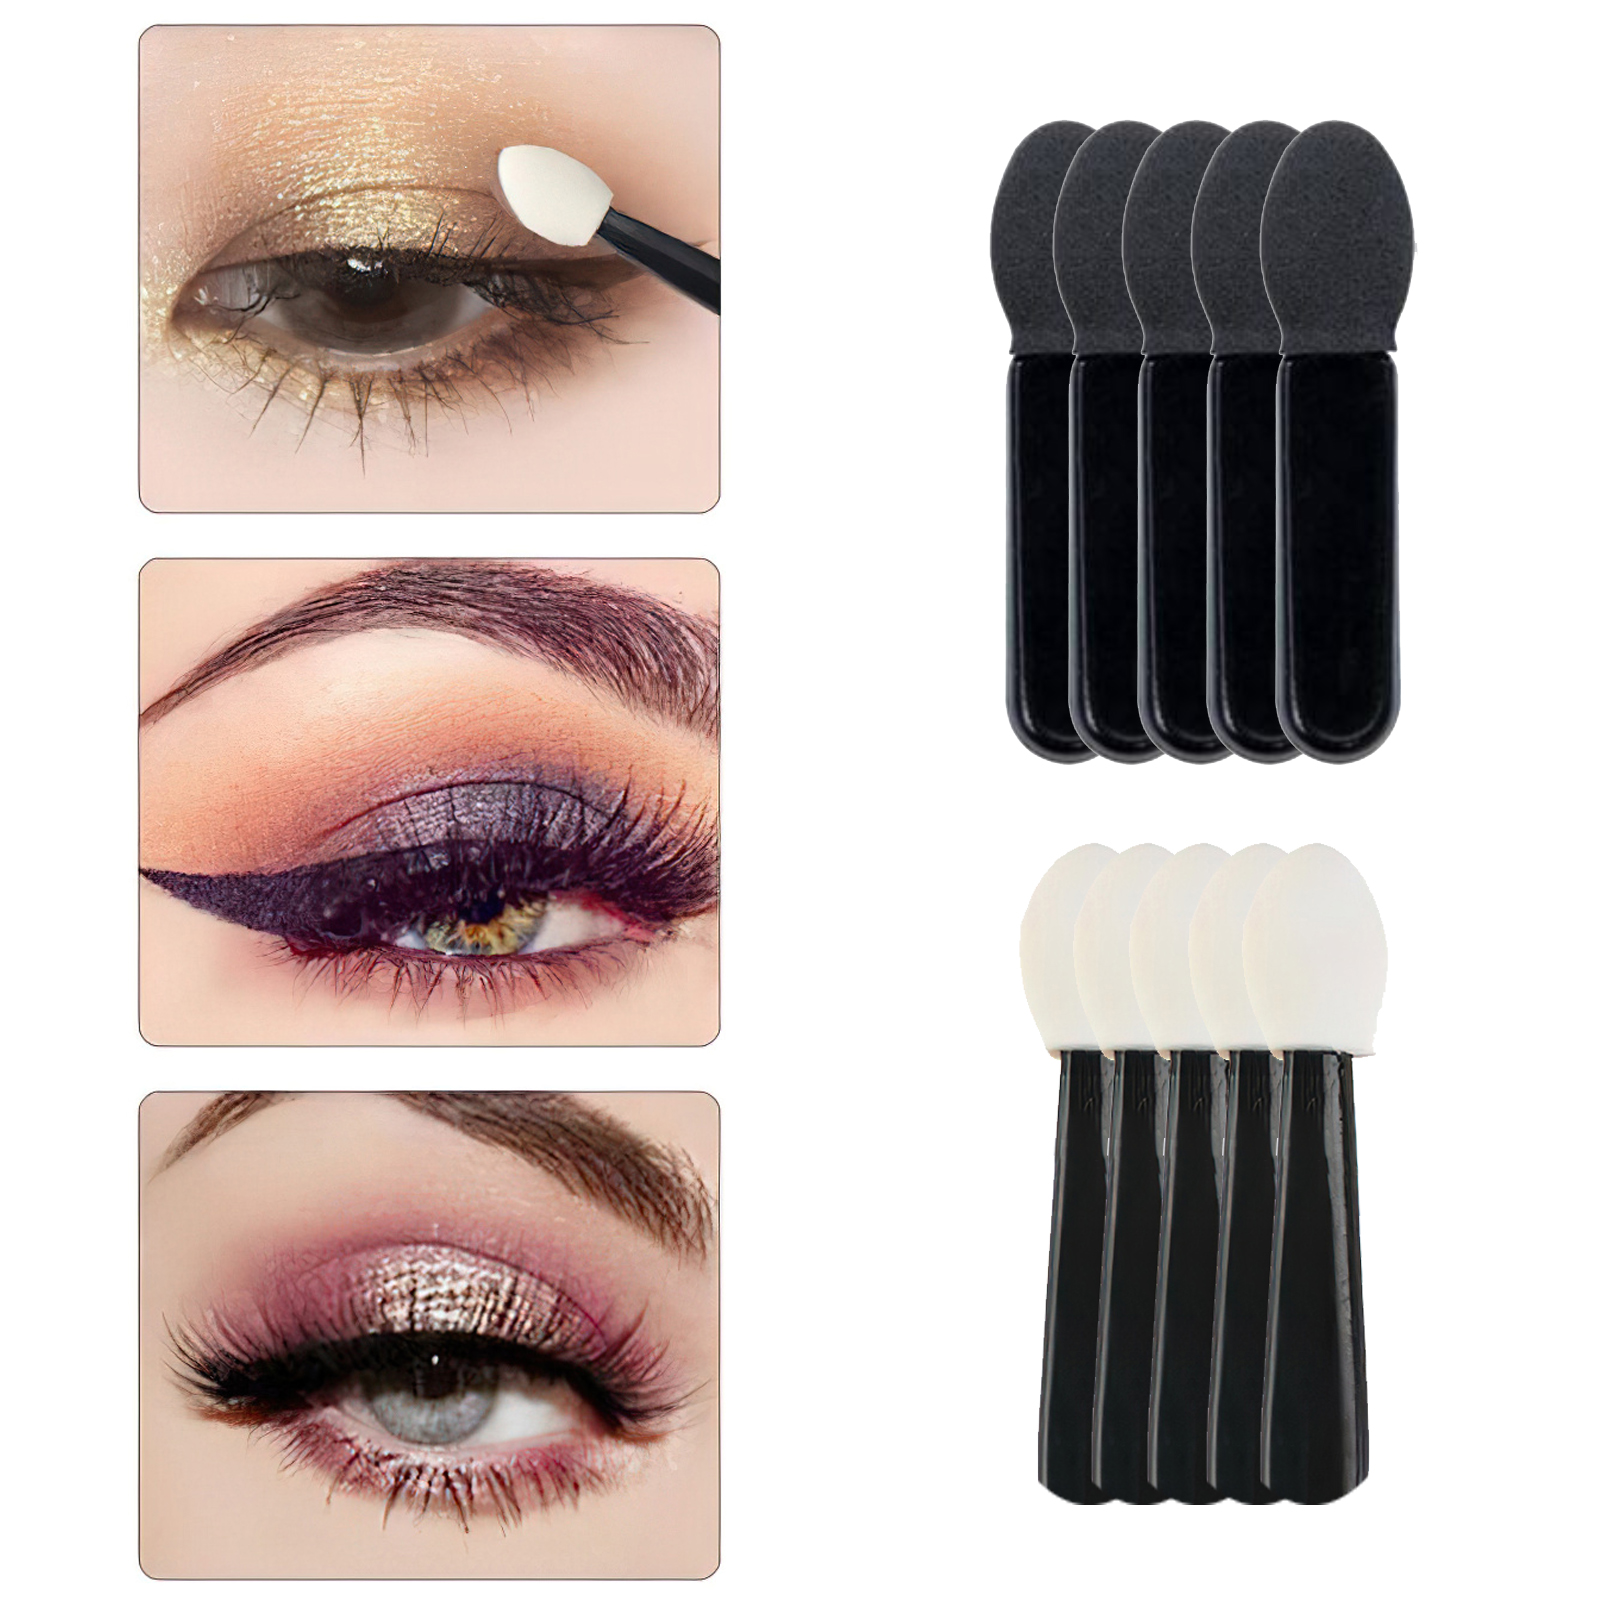 10x Beauty Eye Shadow Eyeliner Brush Sponge Applicator Tool Makeup